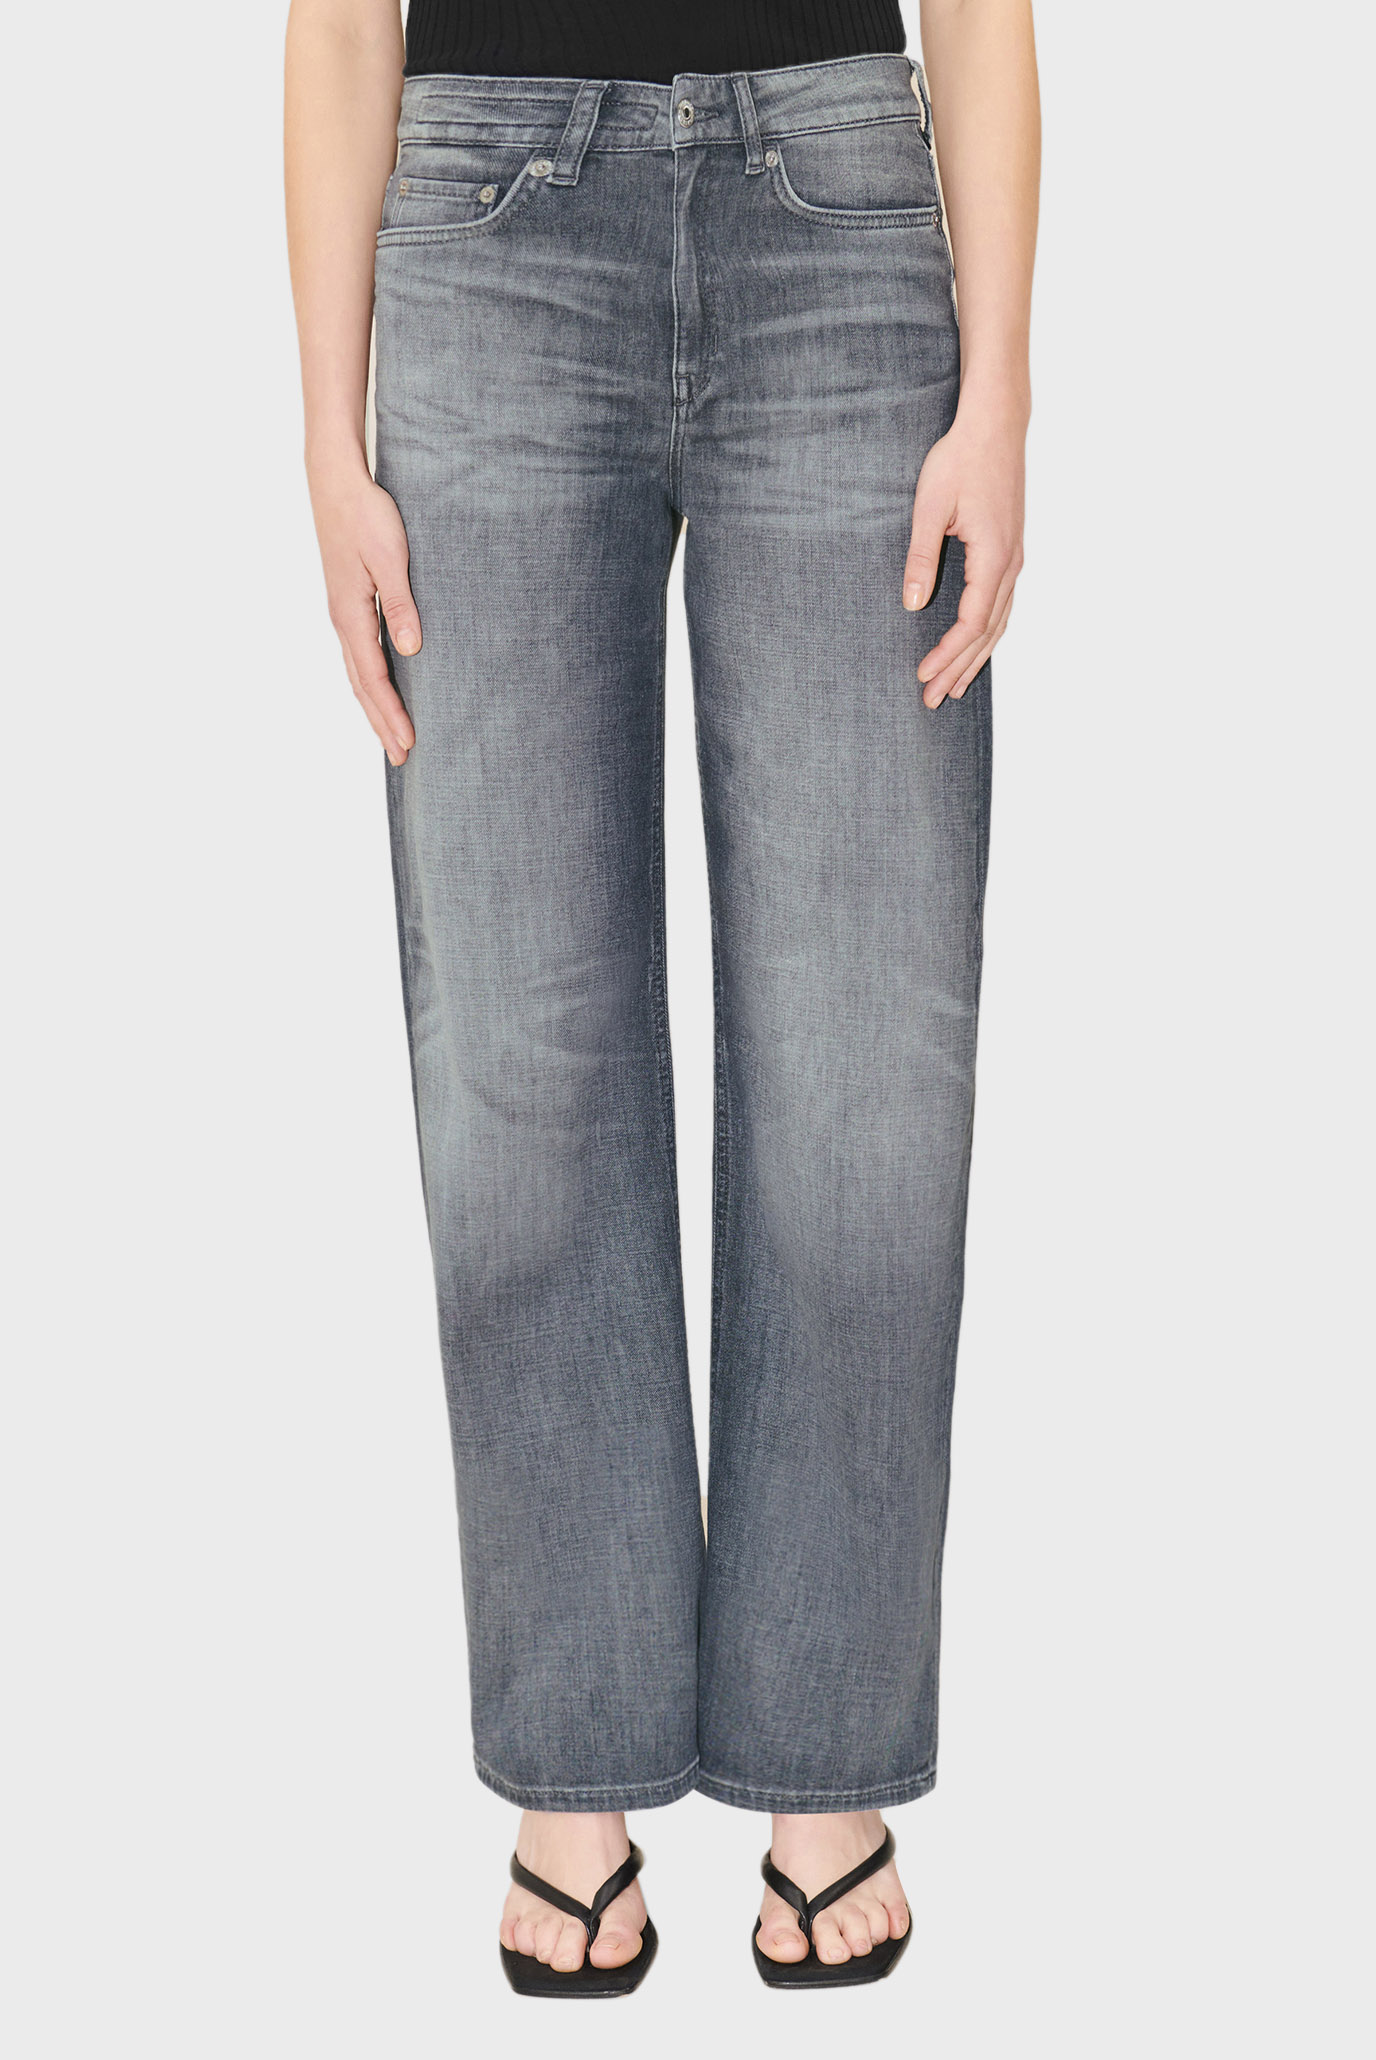 Жіночі сірі джинси MEDLEY 1